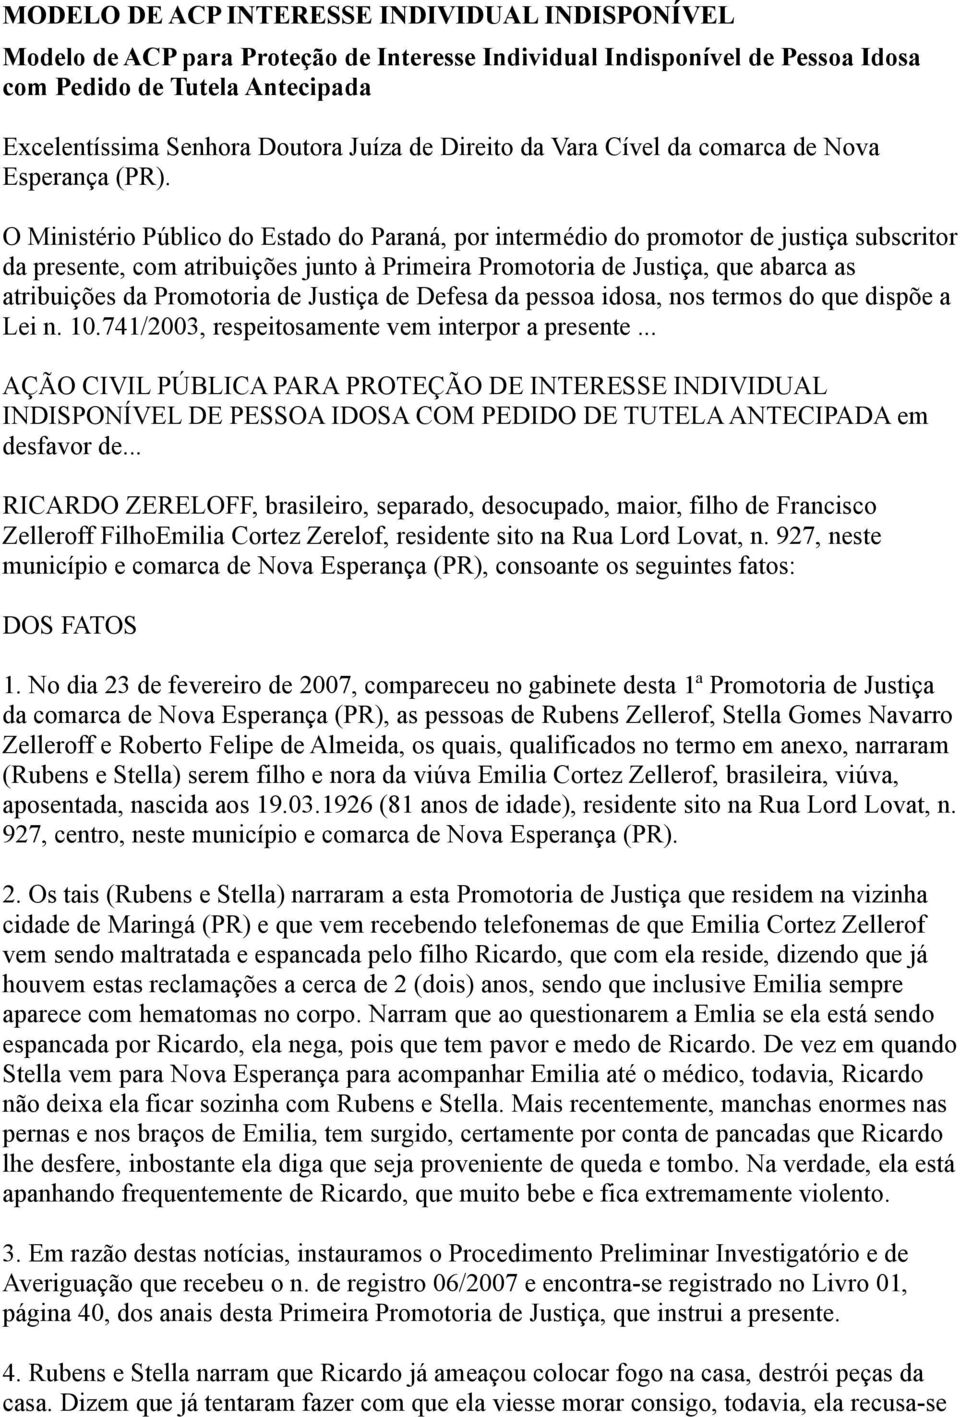 O Ministério Público do Estado do Paraná, por intermédio do promotor de justiça subscritor da presente, com atribuições junto à Primeira Promotoria de Justiça, que abarca as atribuições da Promotoria